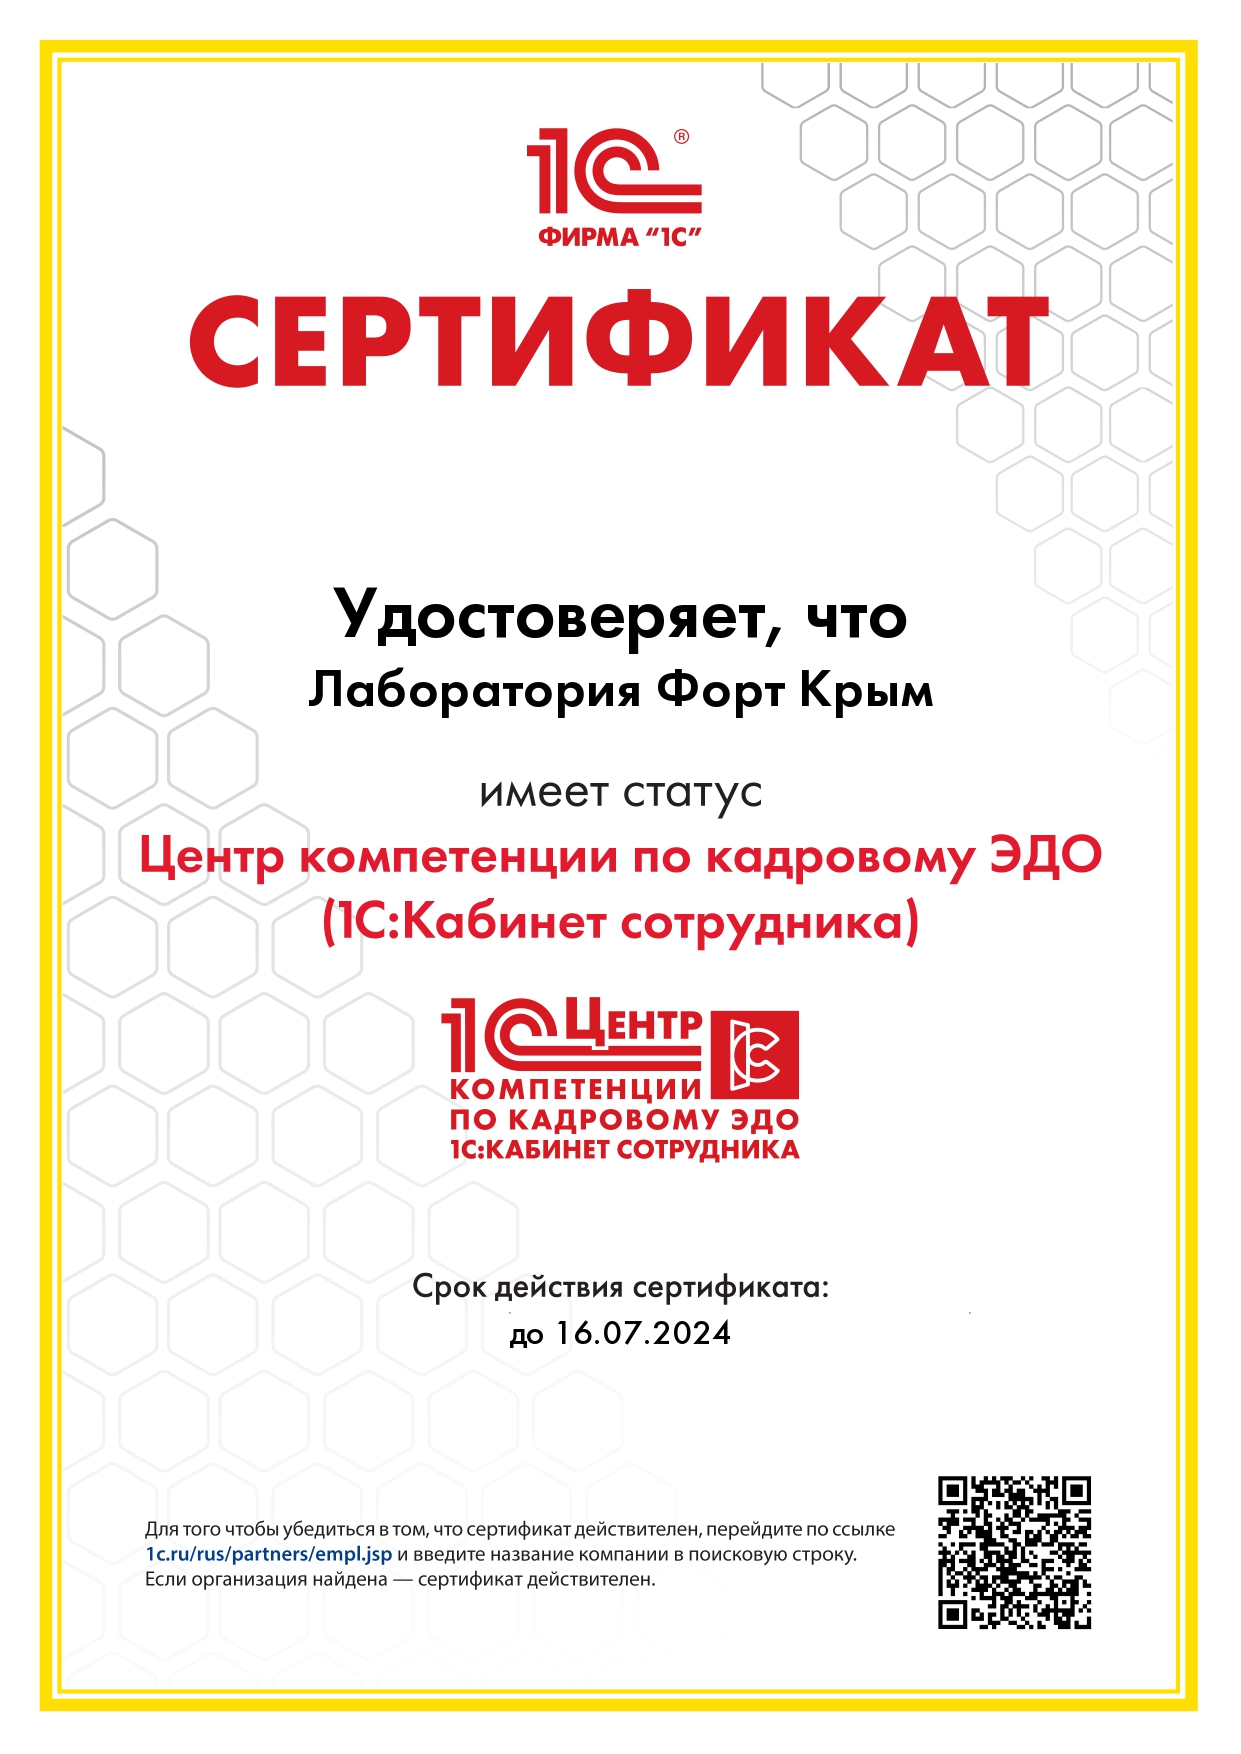 Сертификаты 1С компетенции по кадровому ЭДО в г.Симферополь